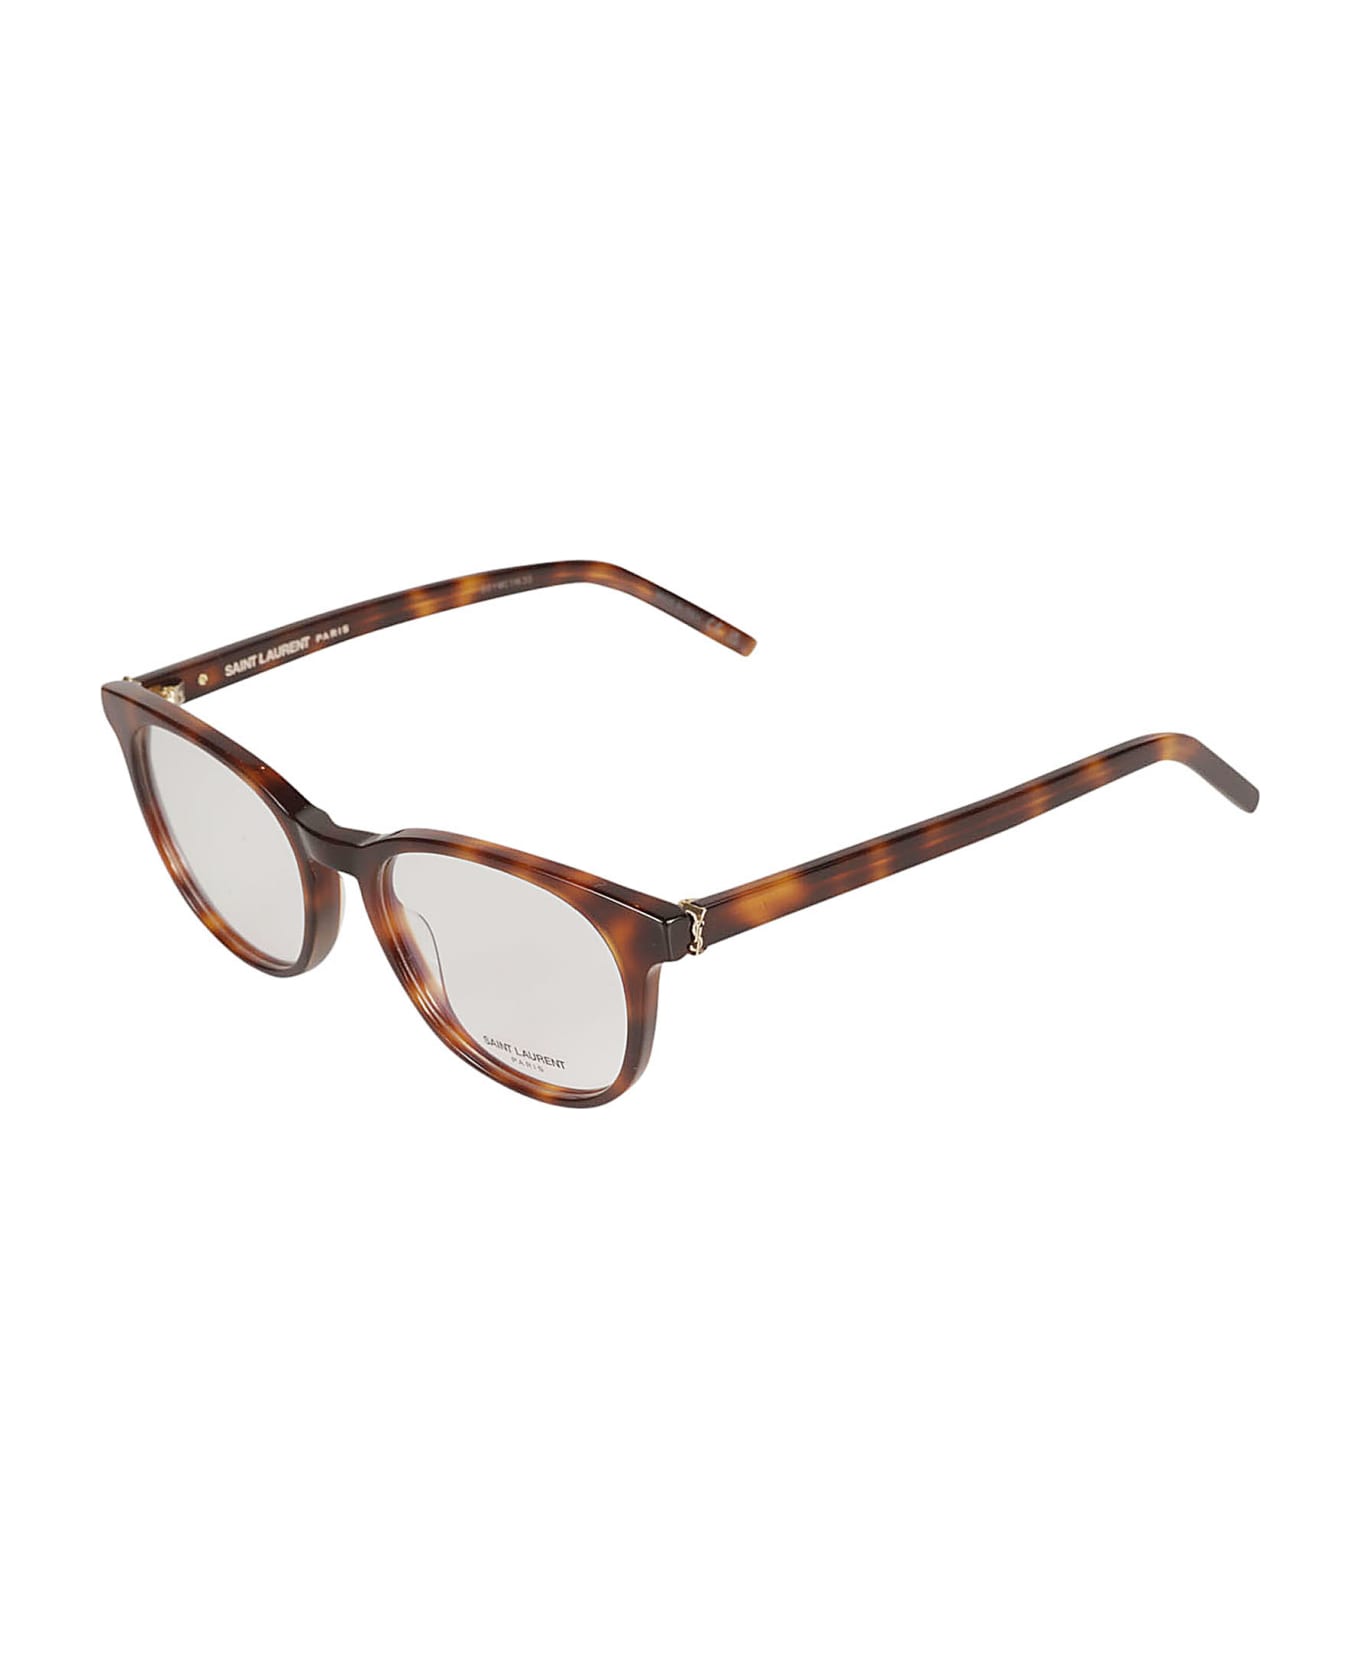 Saint Laurent Eyewear Ysl Hinge Oval Frame Glasses - Havana/Transparent アイウェア